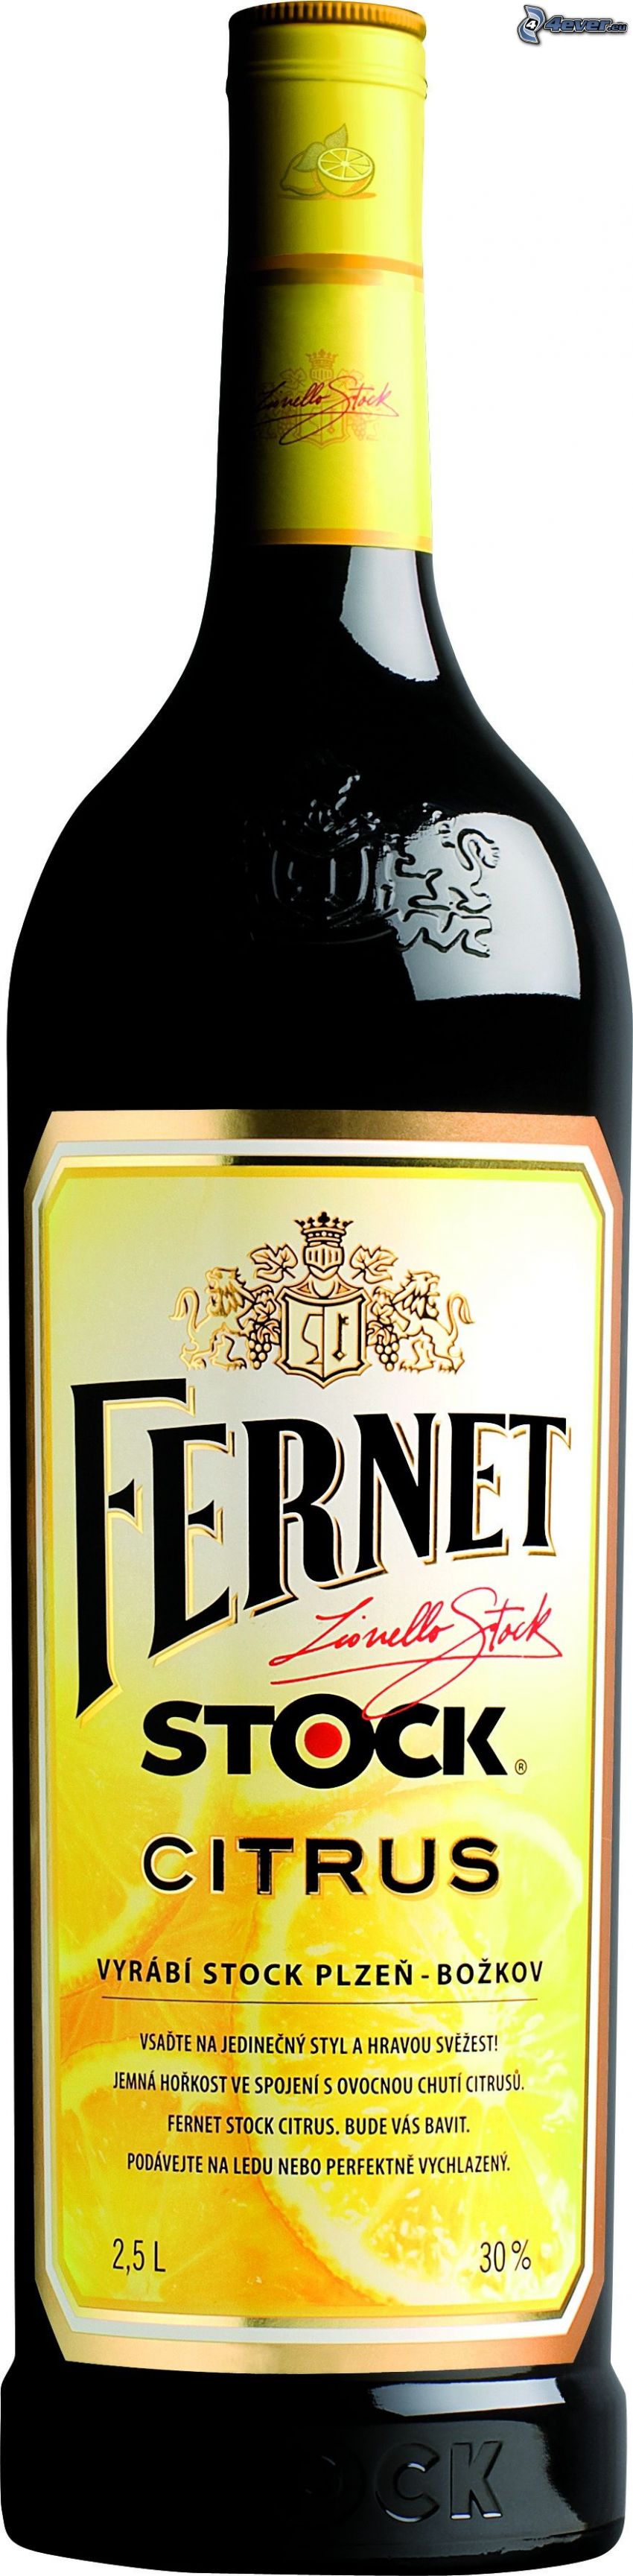 Fernet Stock Citrus, bouteille, alcool